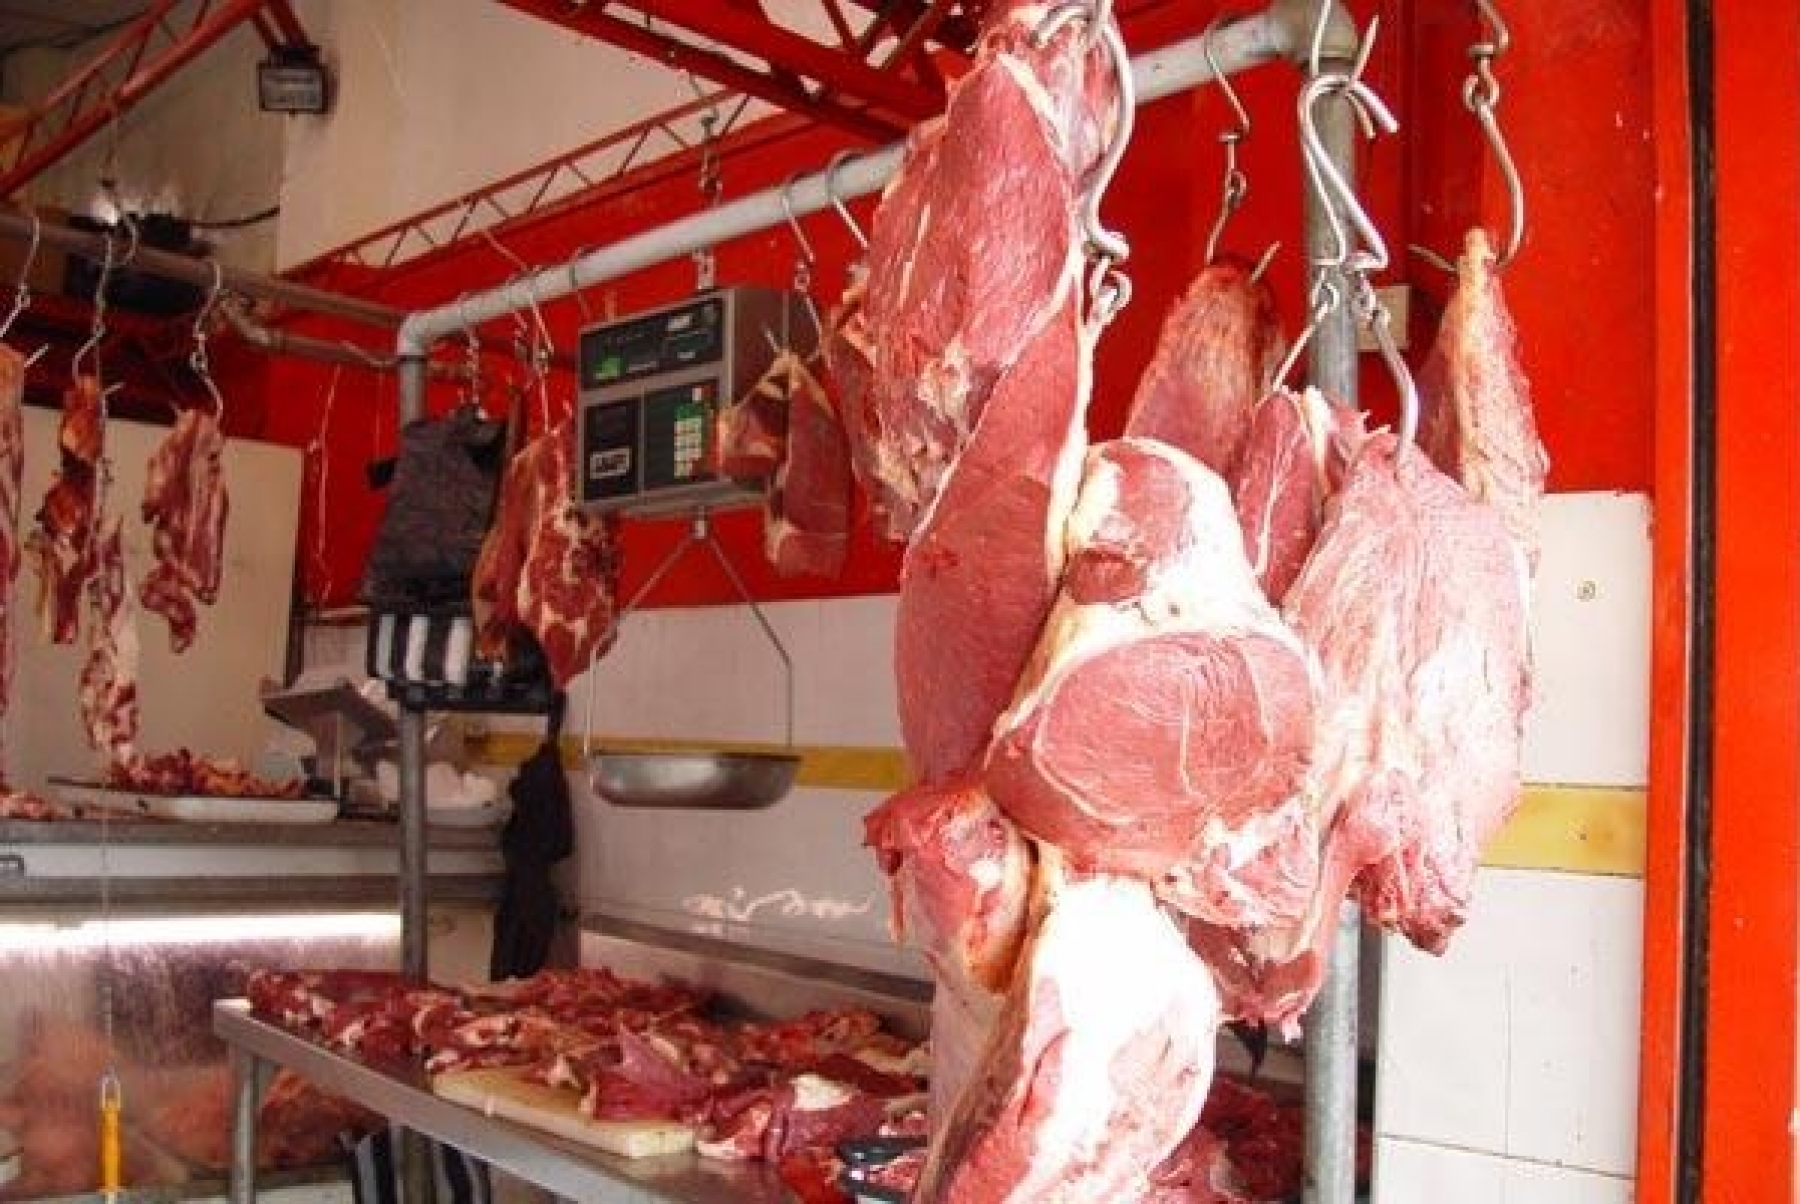  Fedegan pide Investigar y vigilar la especulación con el precio de la carne